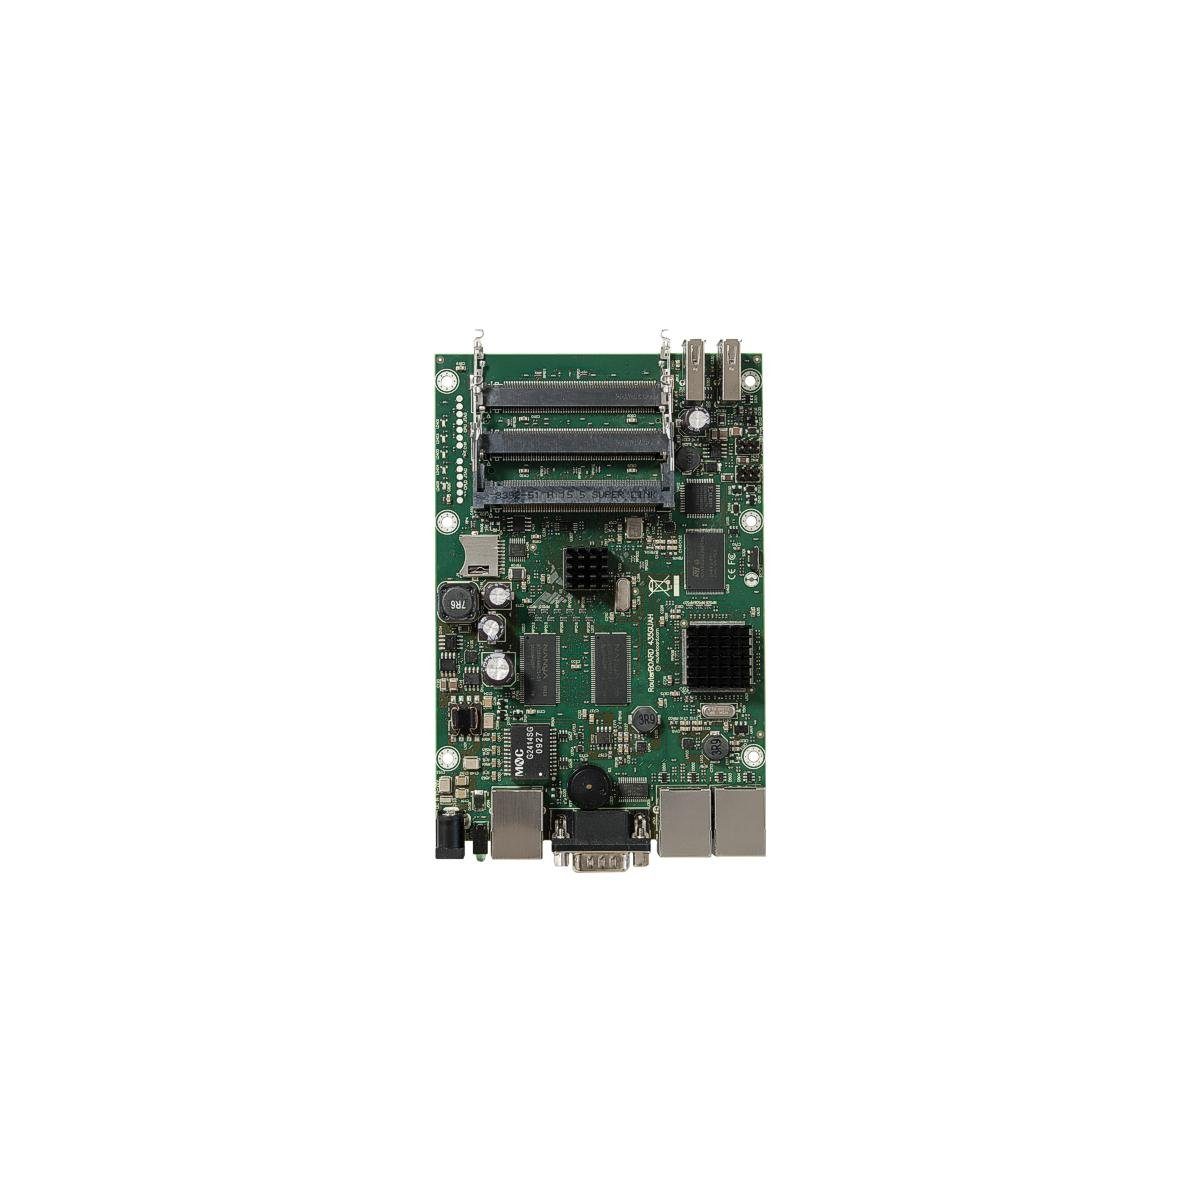 MikroTik RB435G - RouterBOARD, Level 5, 680 MHz Netzwerk-Switch